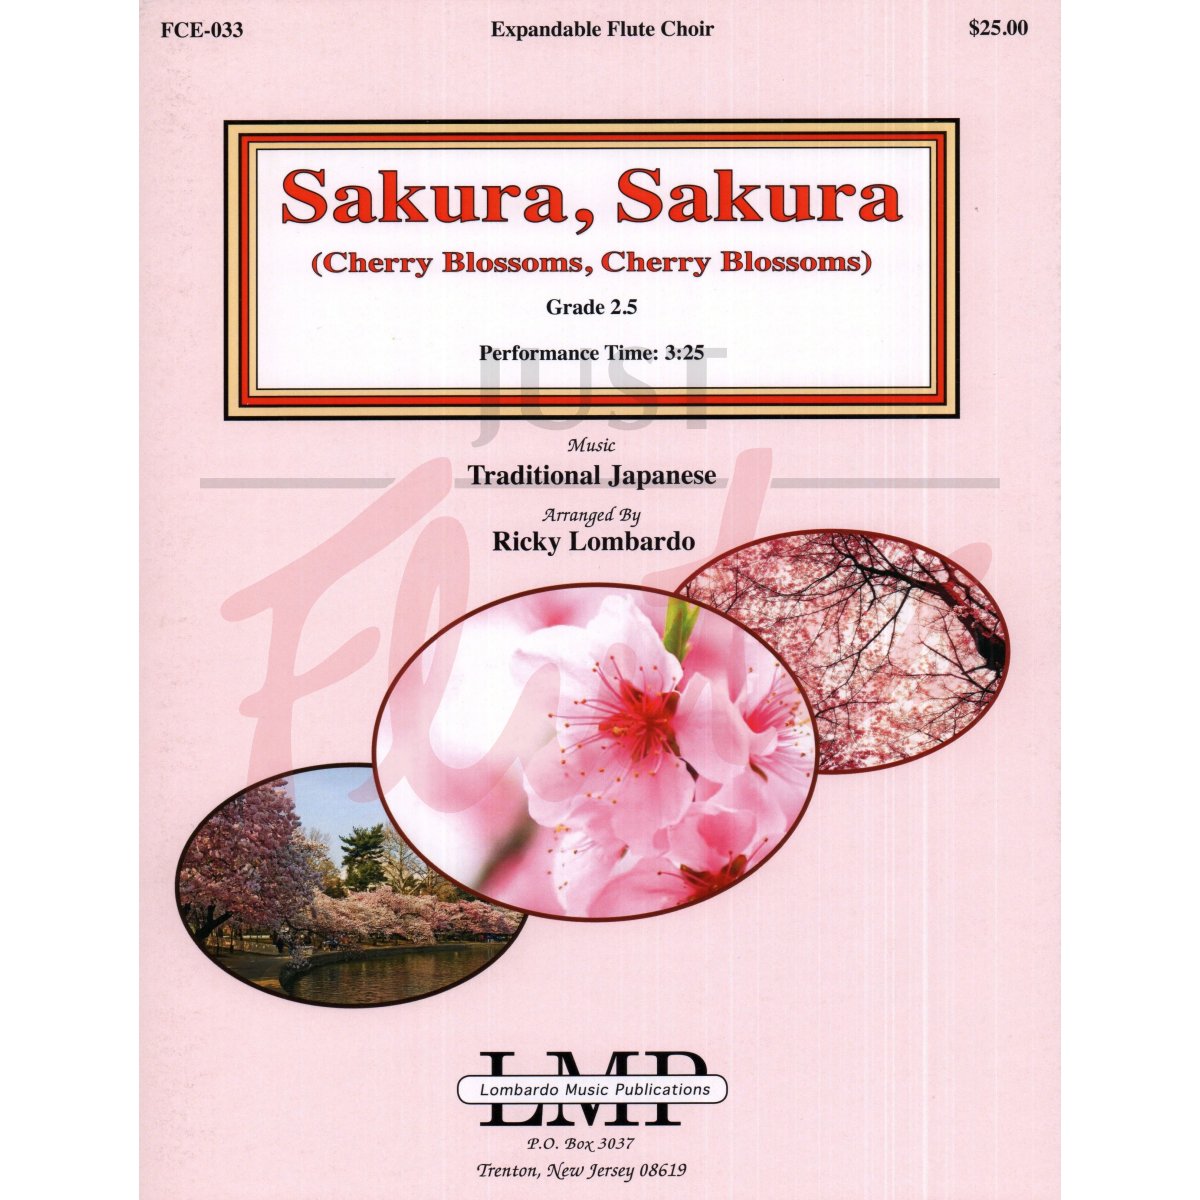 Sakura, Sakura (Cherry Blossoms,Cherry Blossoms) for Expandable Flute Choir